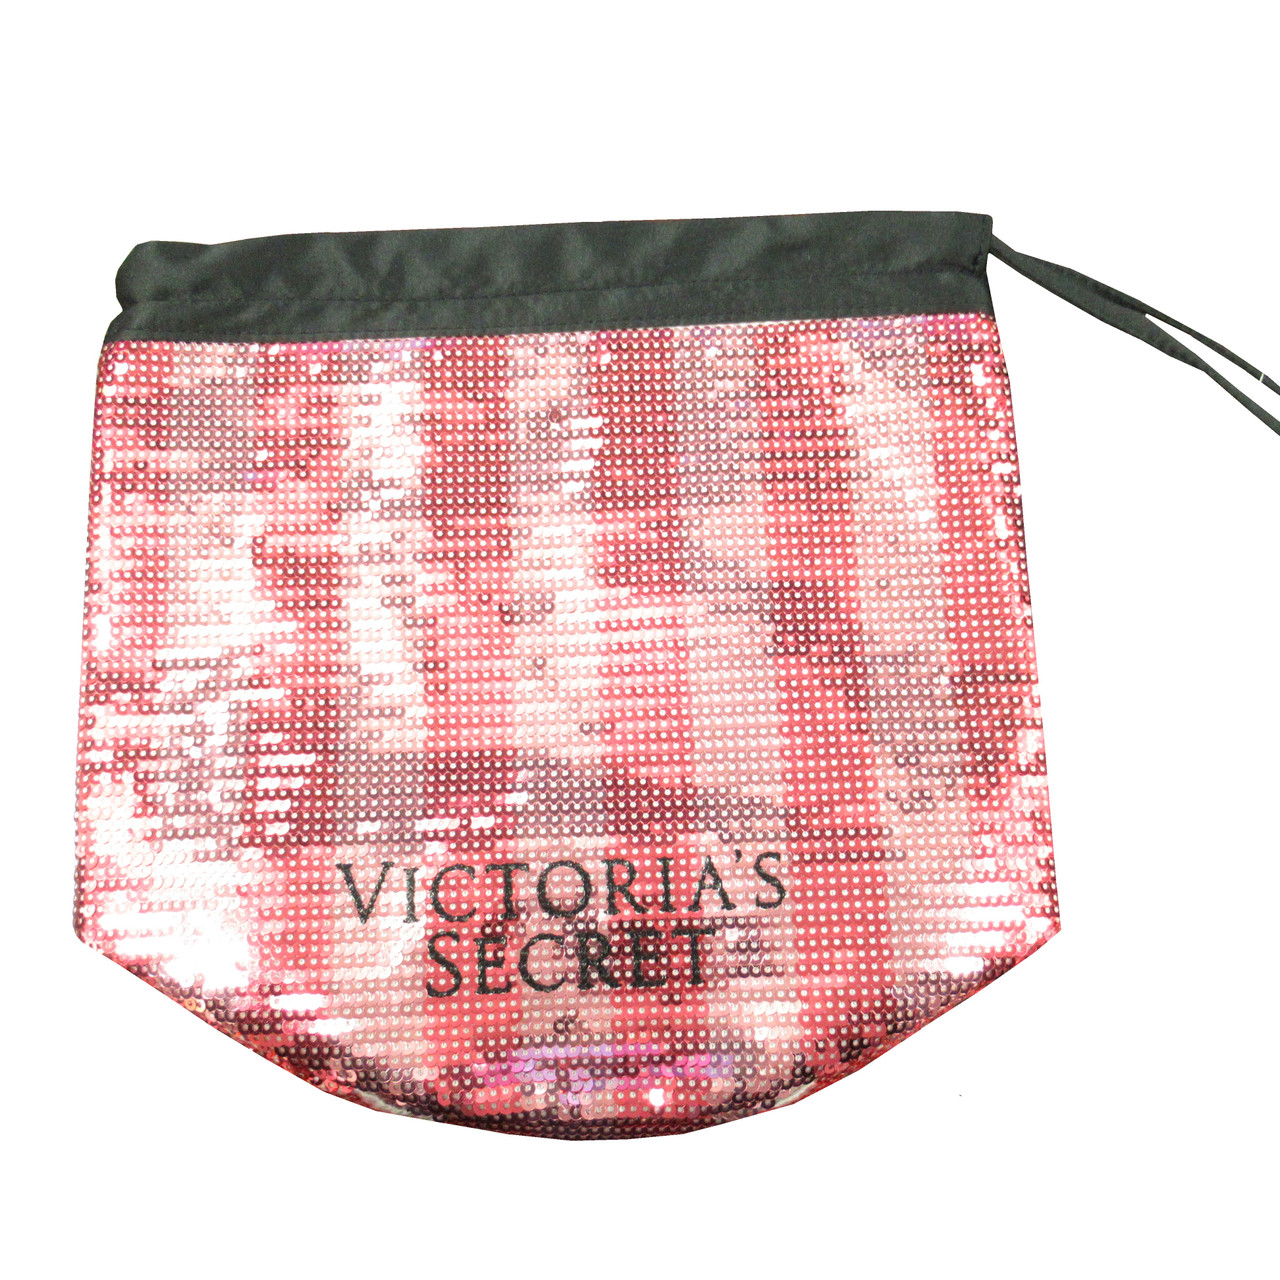 VICTORIA'S SECRET BLING PINK SEQUIN SPARKLE BLACK TOTE BAG - ScentsWorld